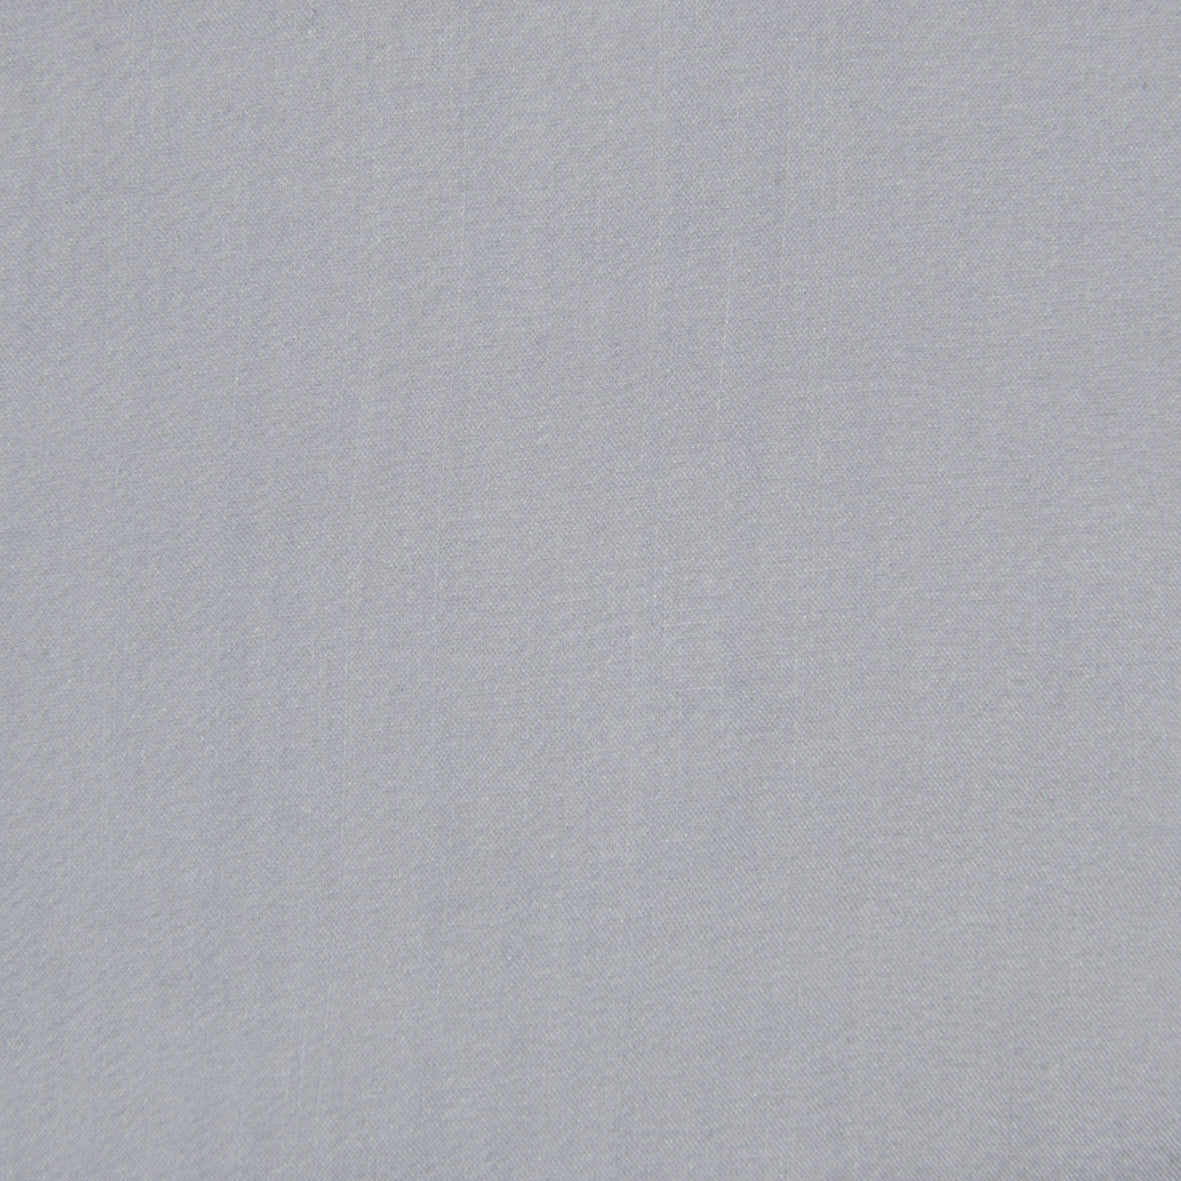 Light Blue Chiffon Silk 1013 - Fabrics4Fashion